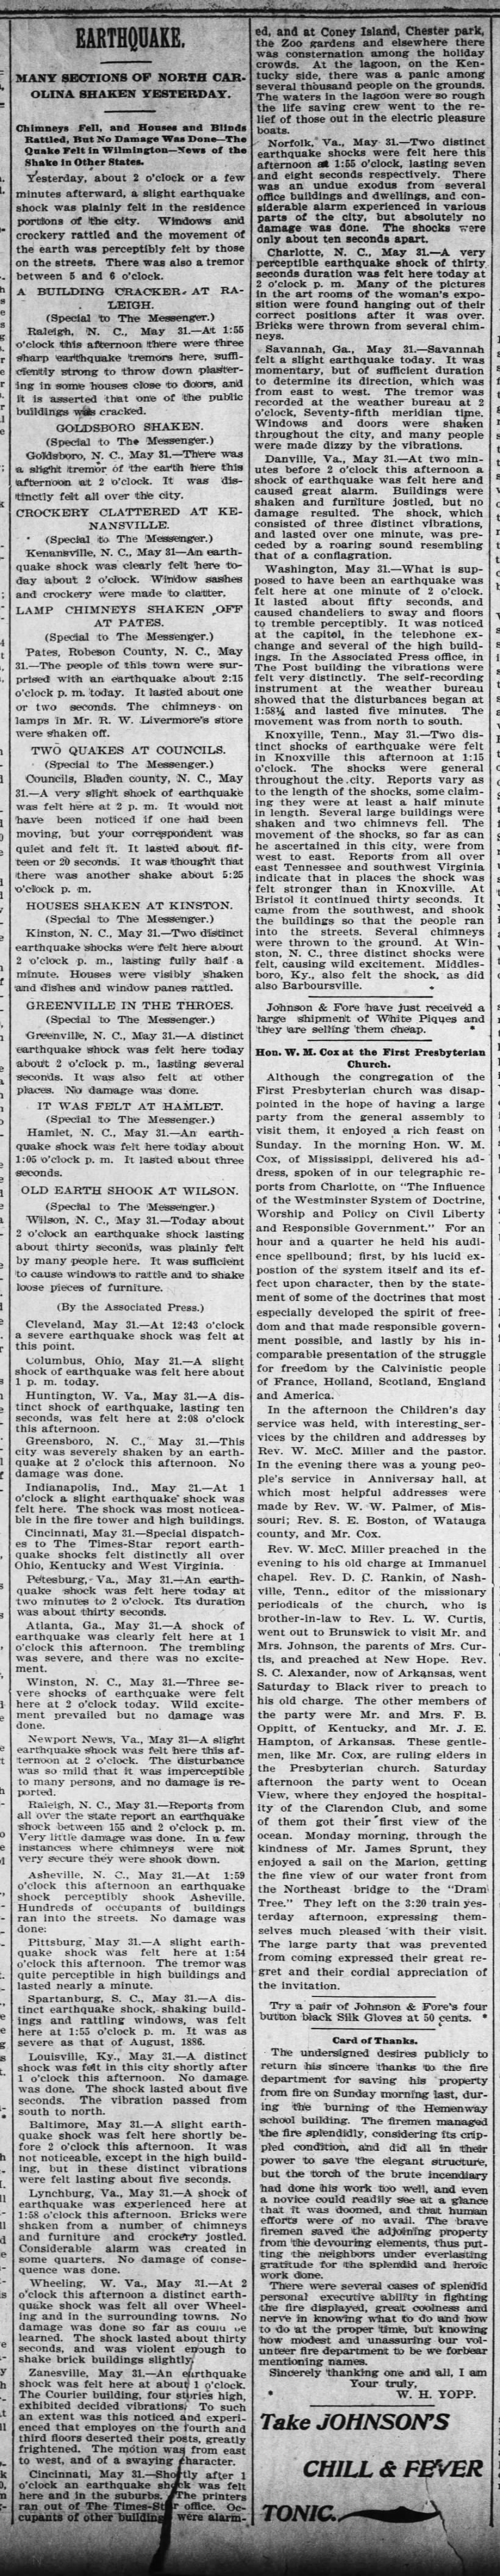 01 June 1897 The Wilmington Messenger (Wilmington, NC) p.4.